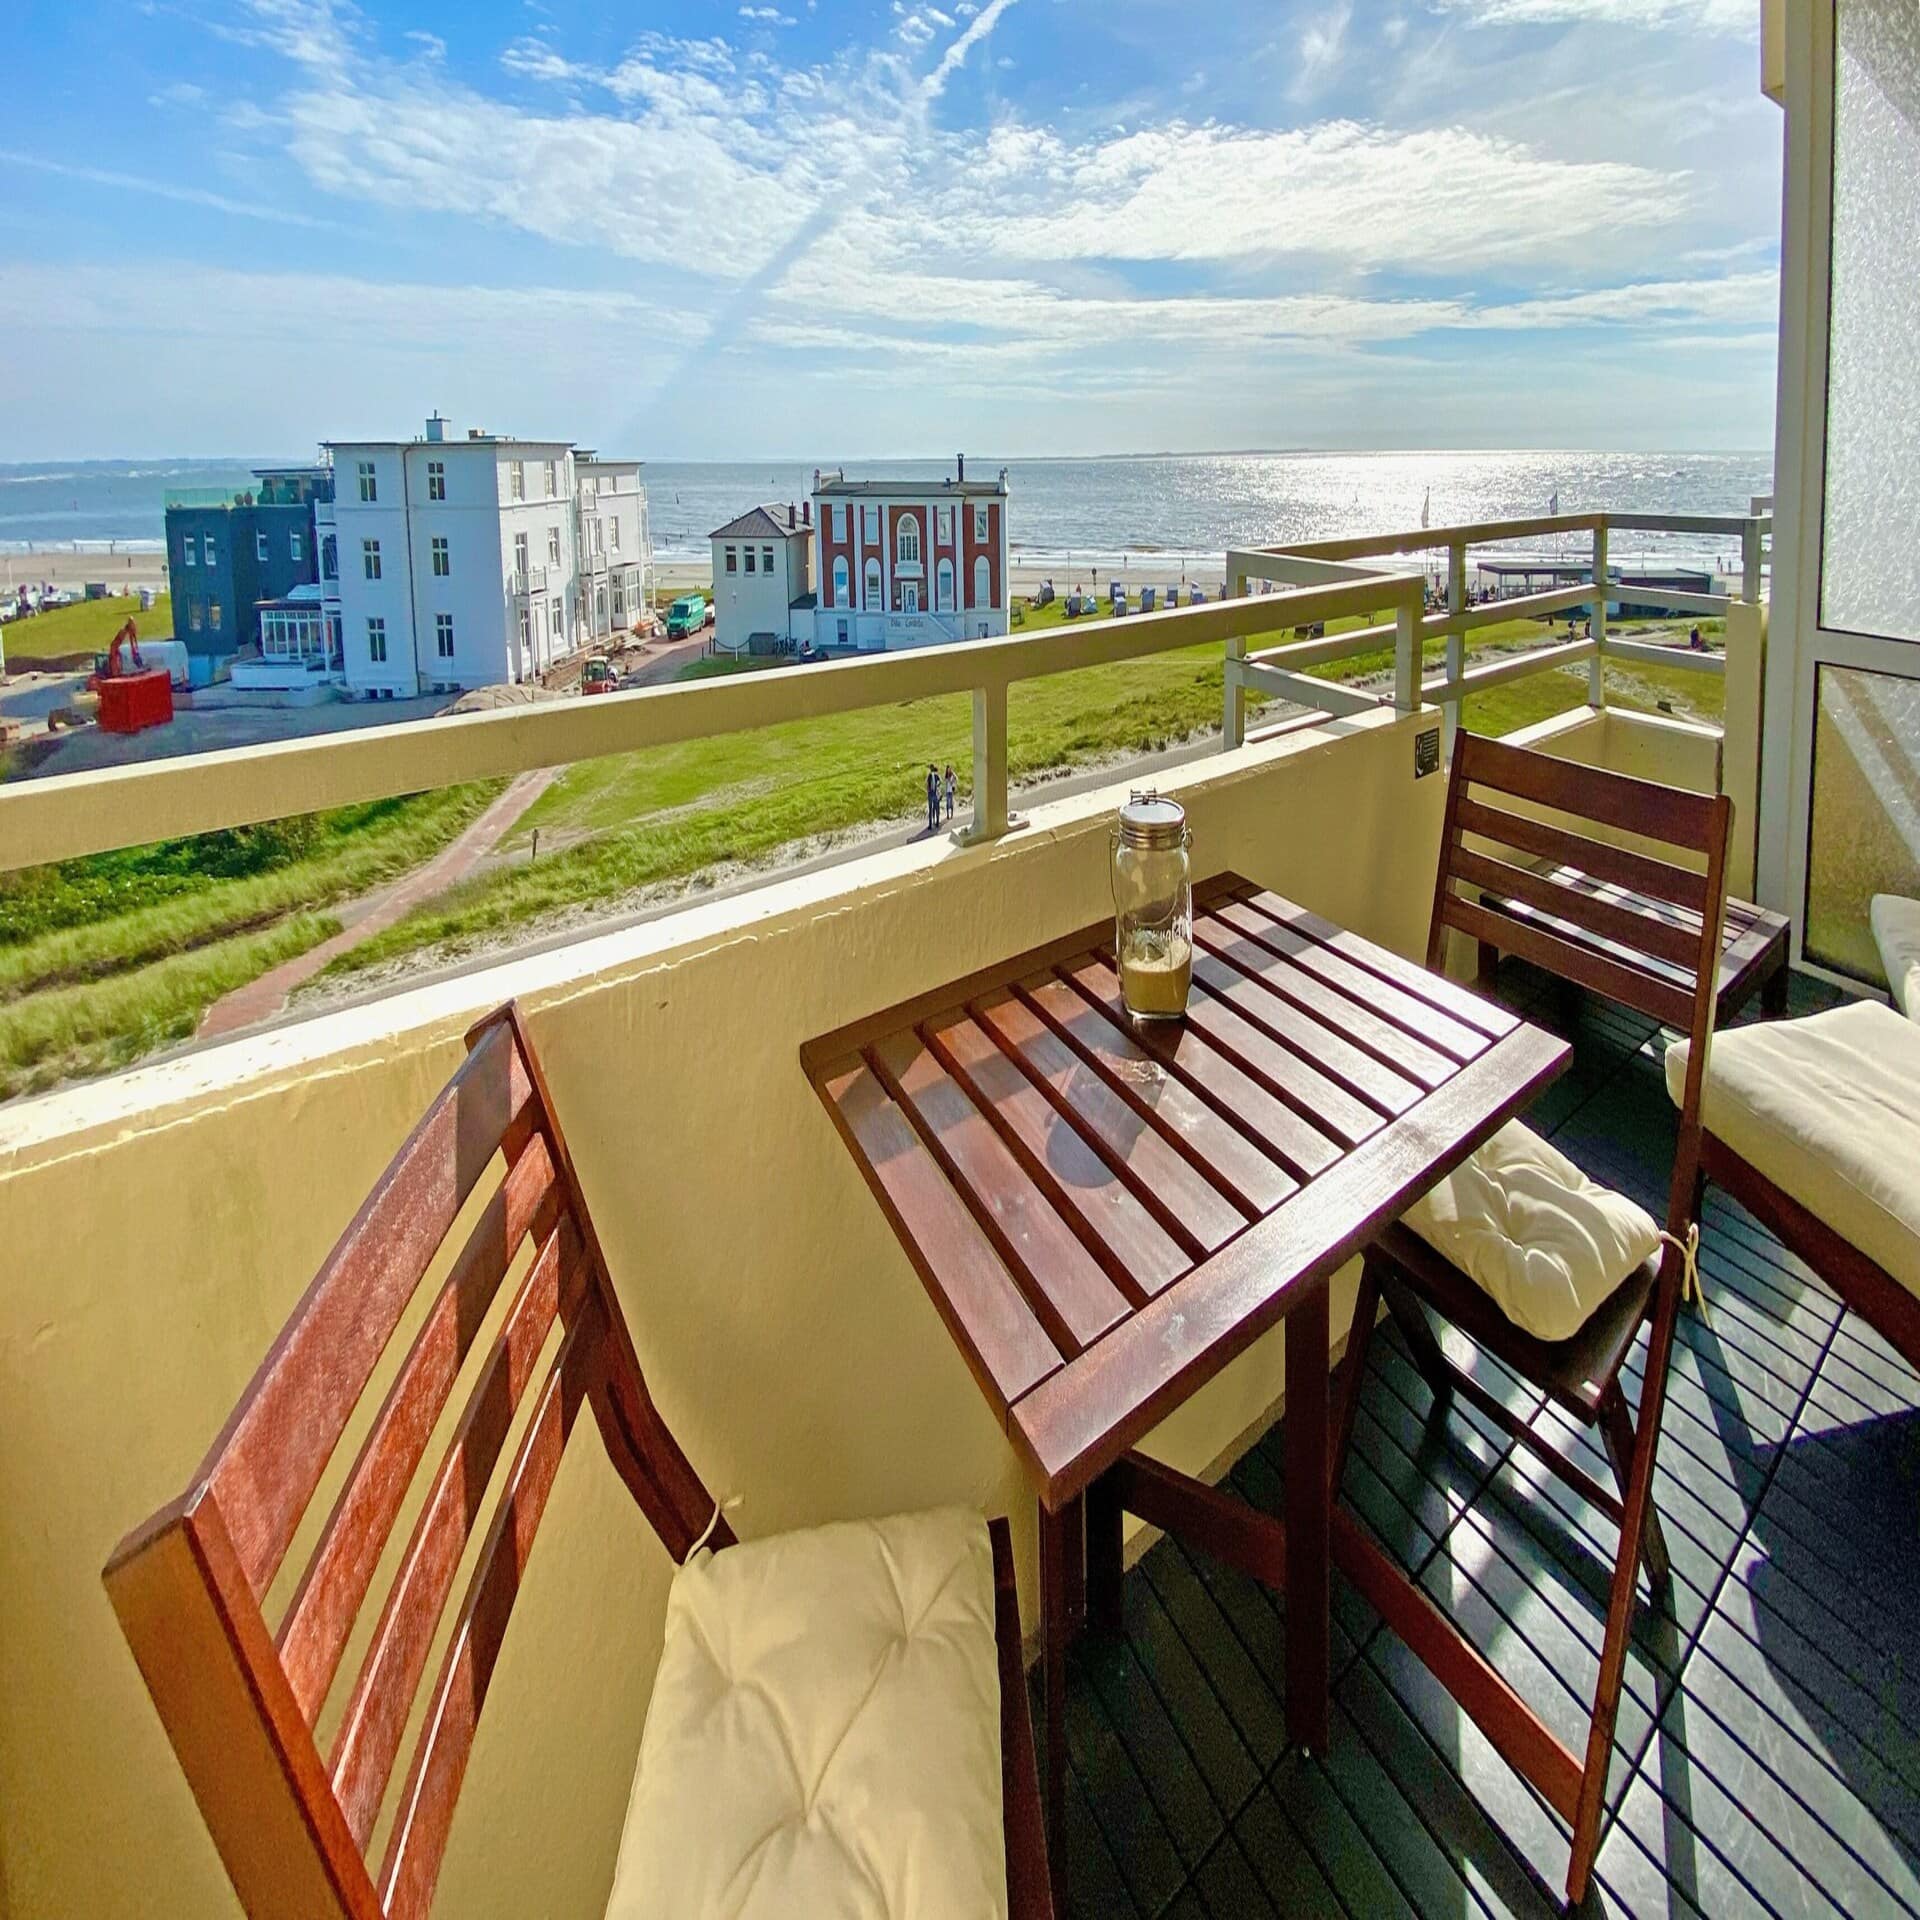 Balkon mit Sitzgelegenheiten und Blick auf Gebäude, den Strand und das Meer. Die Sonne scheint. 